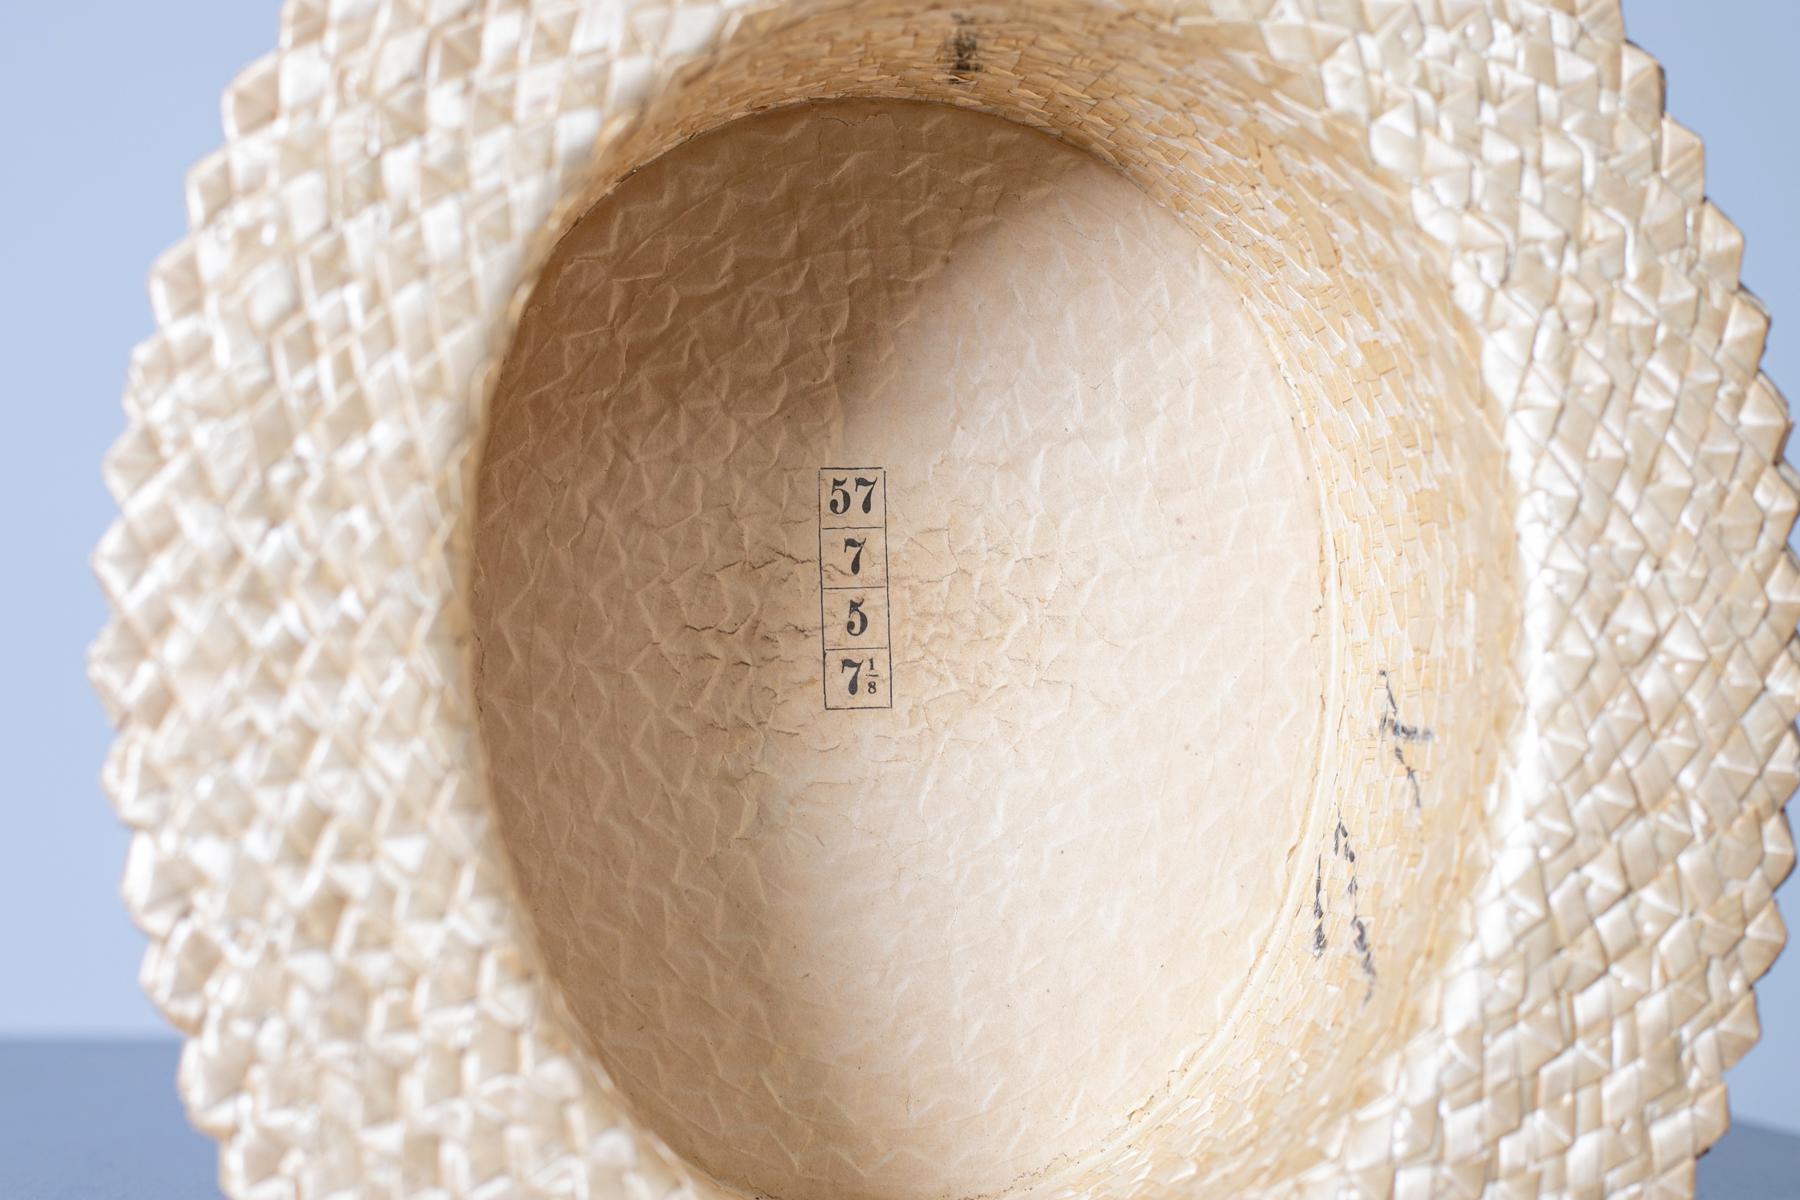 Schöner gelber Strohhut aus den 1990er Jahren, feine italienische Herstellung.
Der Hut ist ganz aus Stroh und hat eine quadratische Form.
Die Kuppel ist glatt, ohne Quetschungen oder dekorative Elemente.
Im Inneren der Kuppel ist der Hut mit Stoff